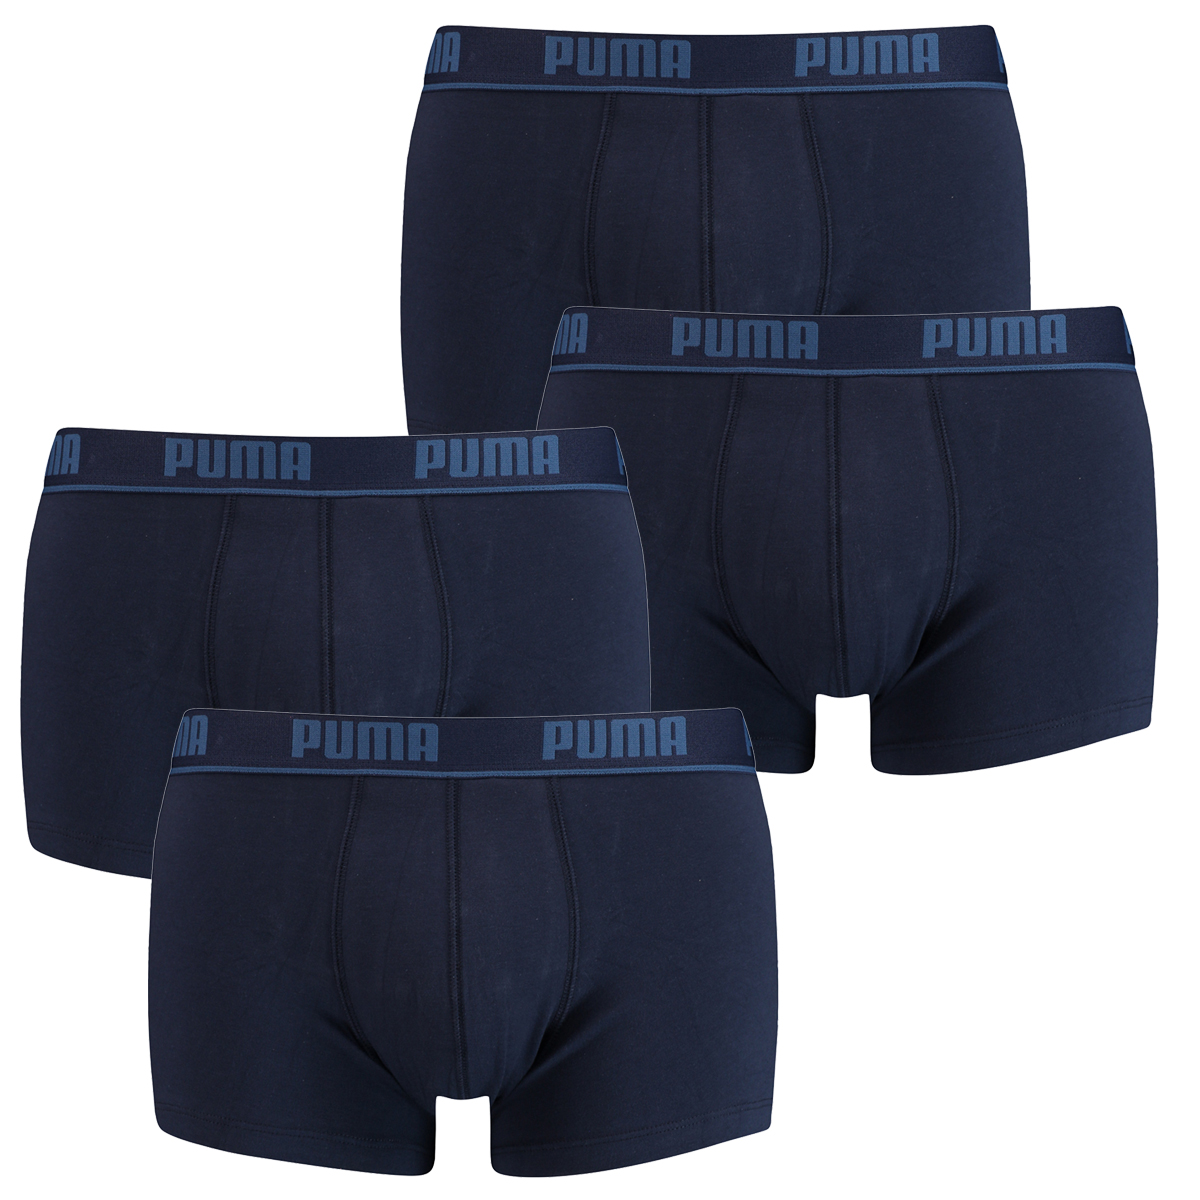 Puma Herren Shortboxer Basic Unterhosen 4er Pack in verschiedenen Farben 521025001 (2er red-grey (072)/2er red-grey (072), S)